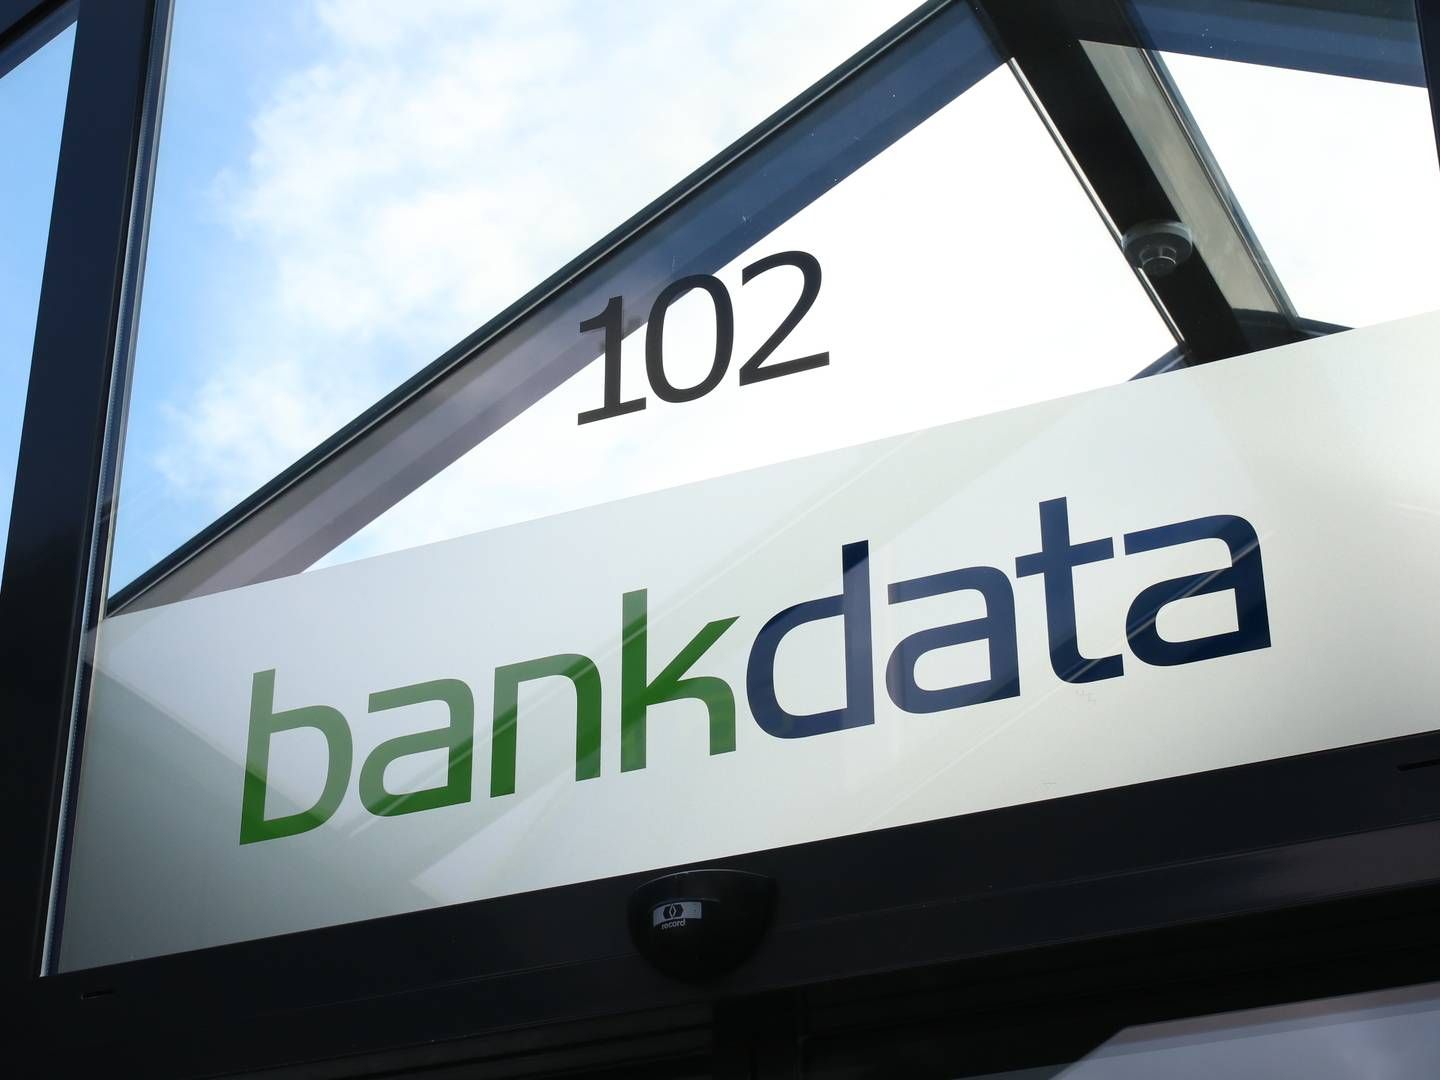 Bankdata leverer it-løsninger til otte danske banker. | Foto: bankdata